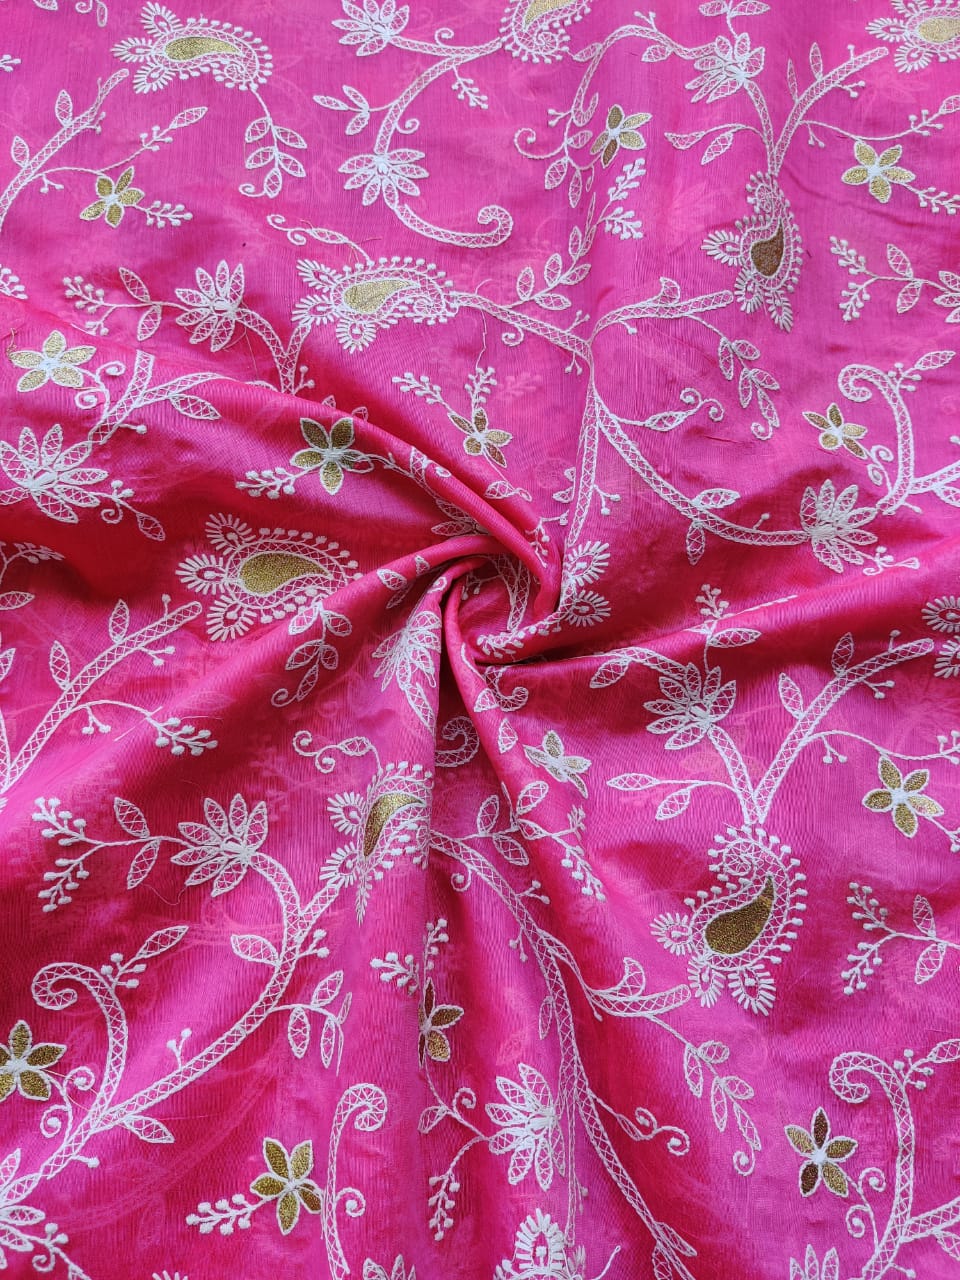 magenta-pink-chikankari-embroidered-chanderi-fabric